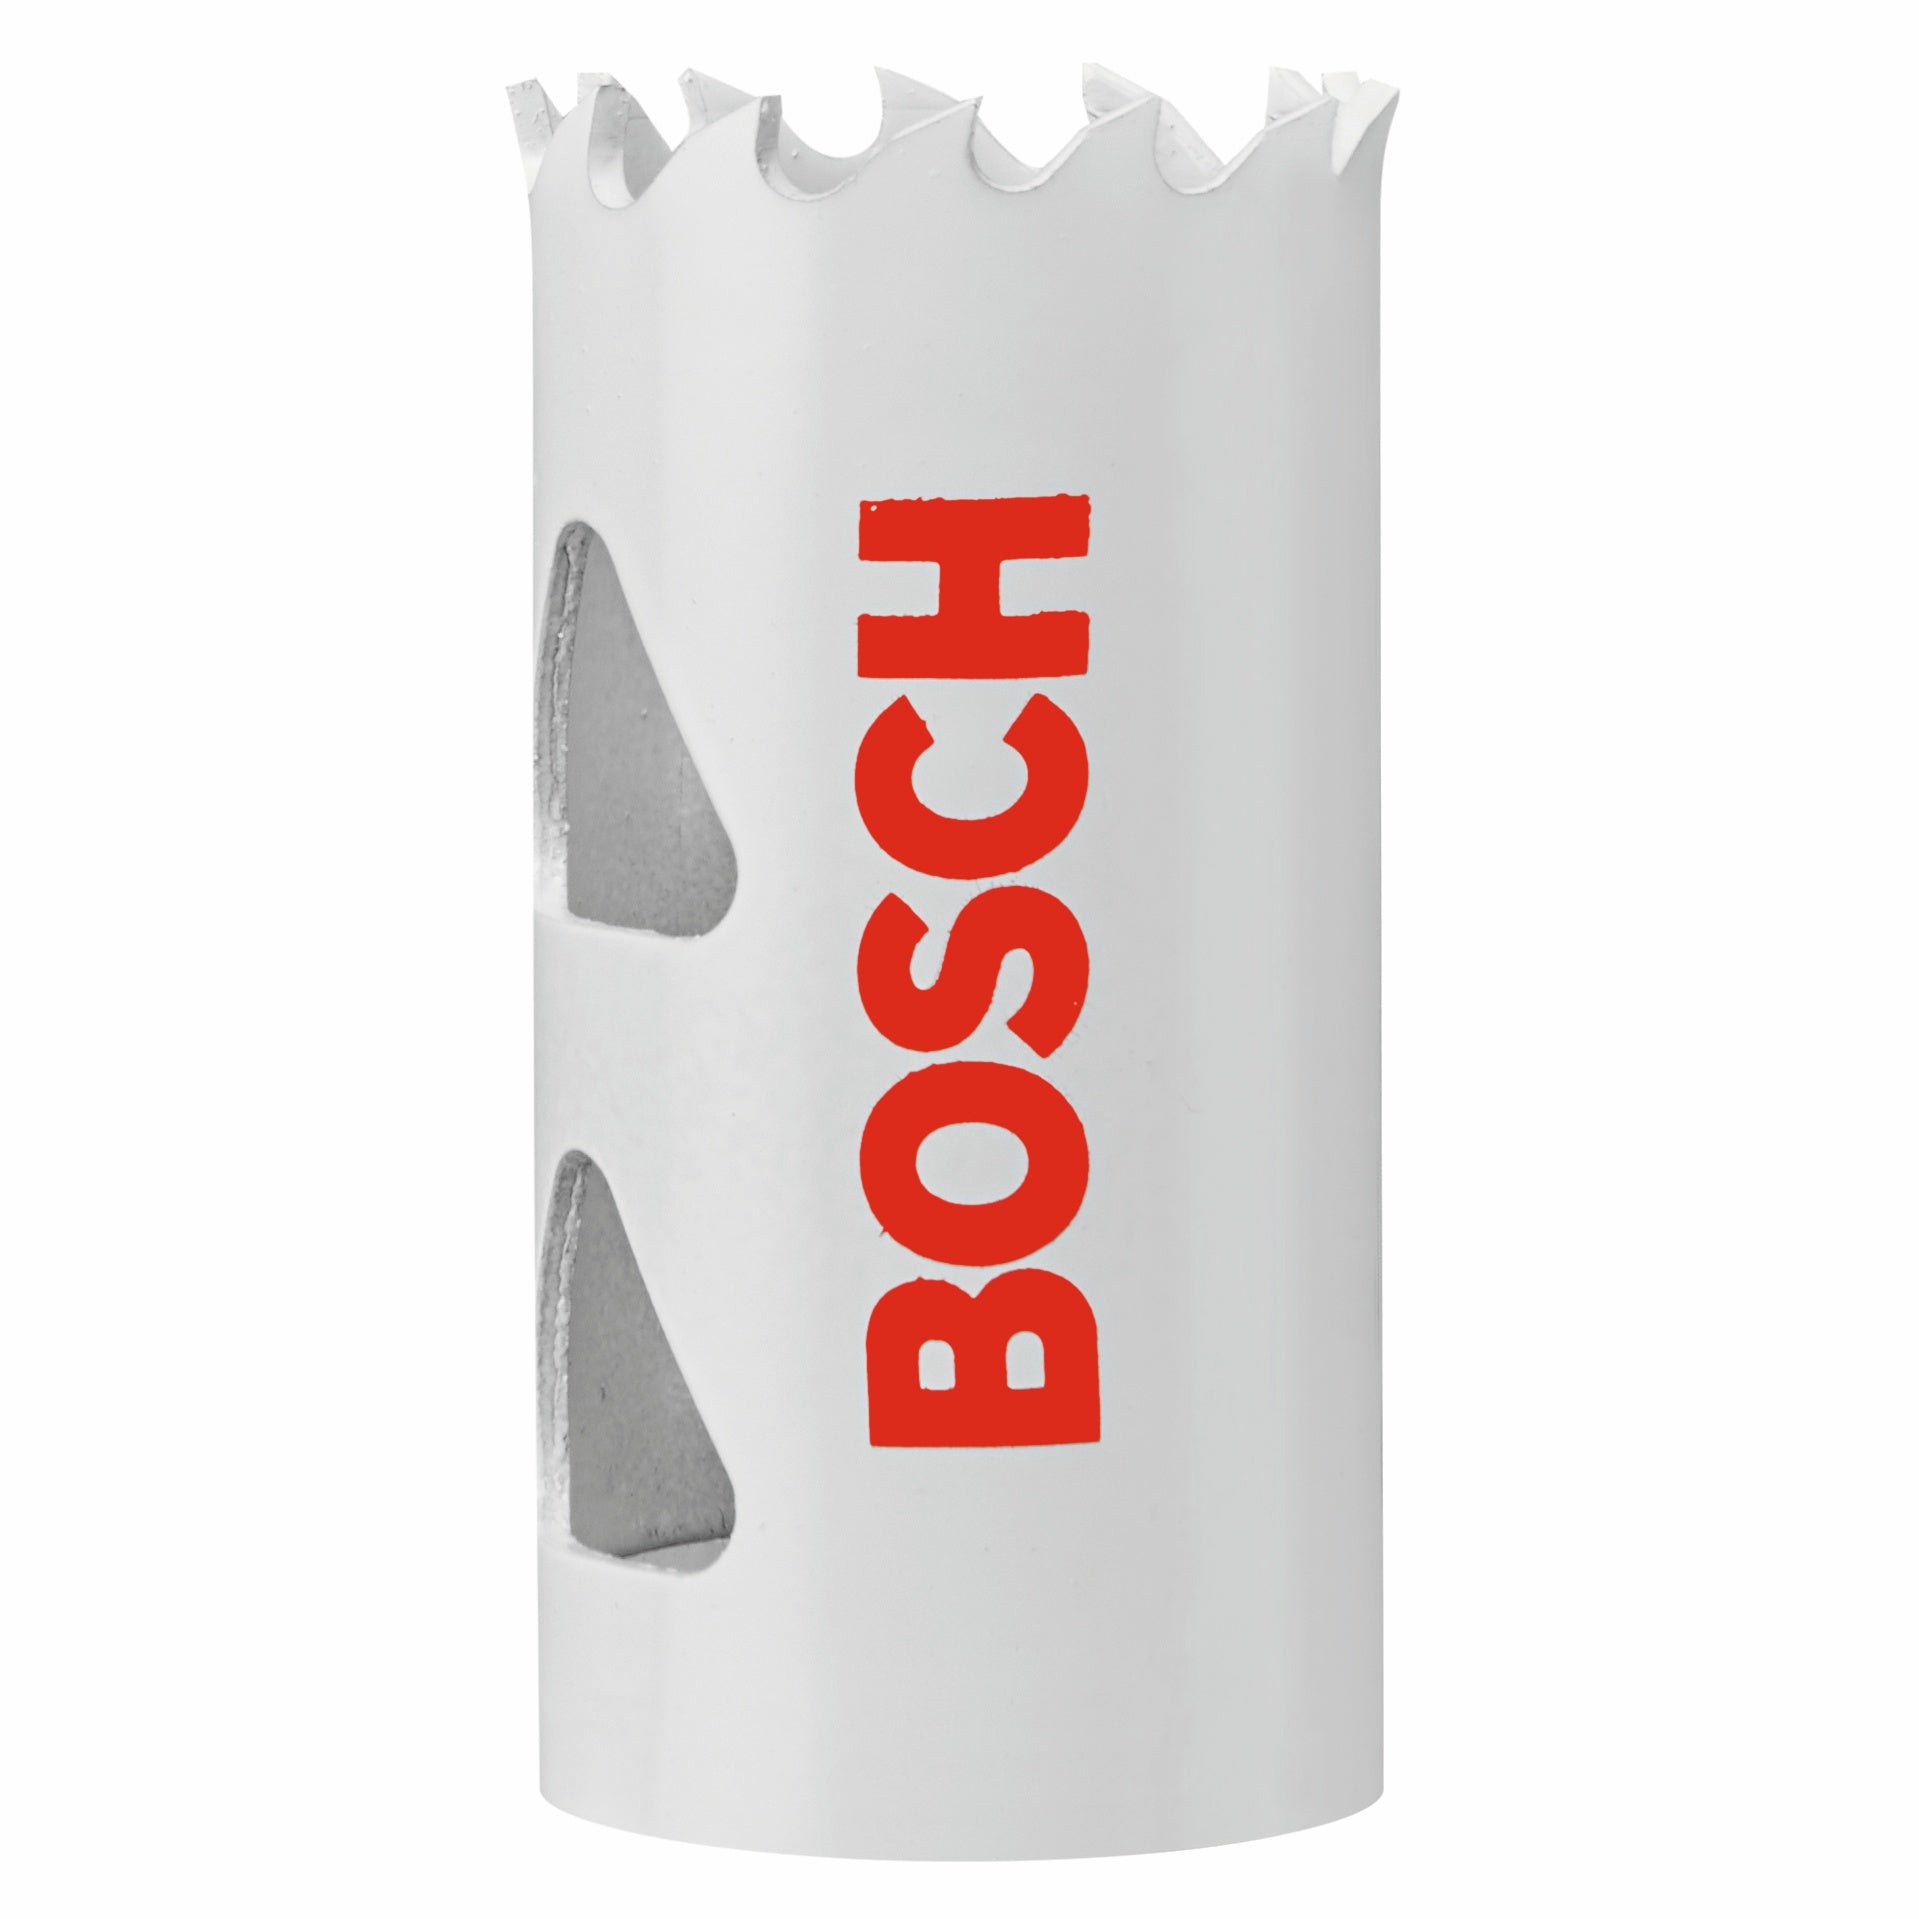 Bosch, BOSCH 1-1/16" Bi-Metal M42 Hole Saw